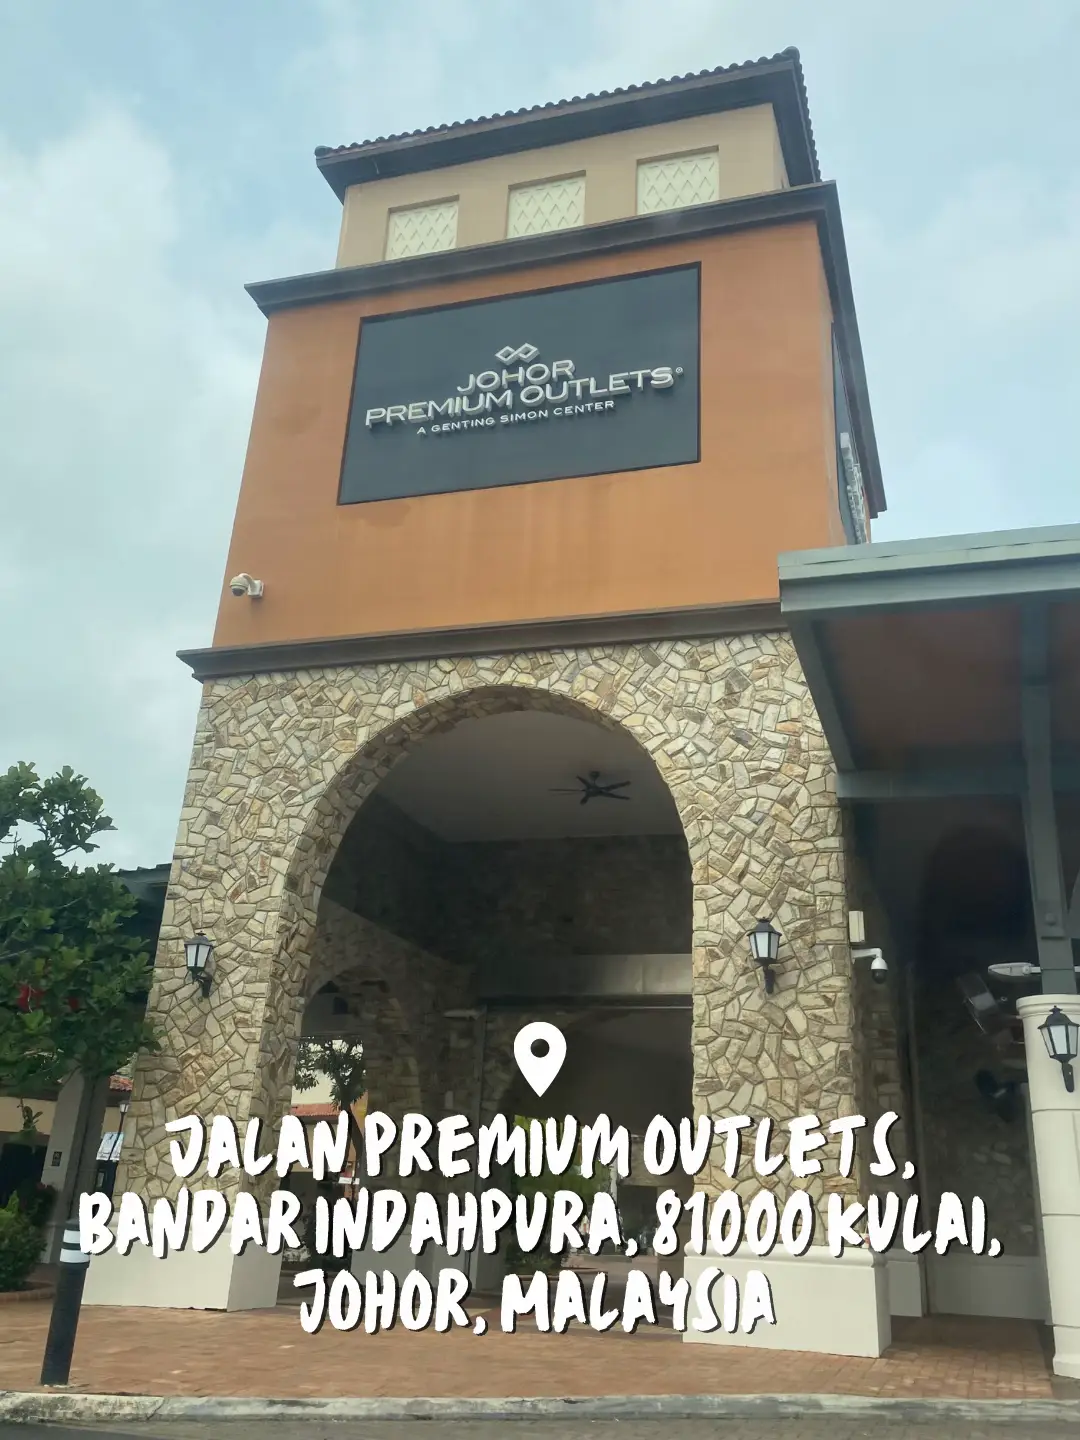 Johor Premium Outlet, Johor. Malaysia